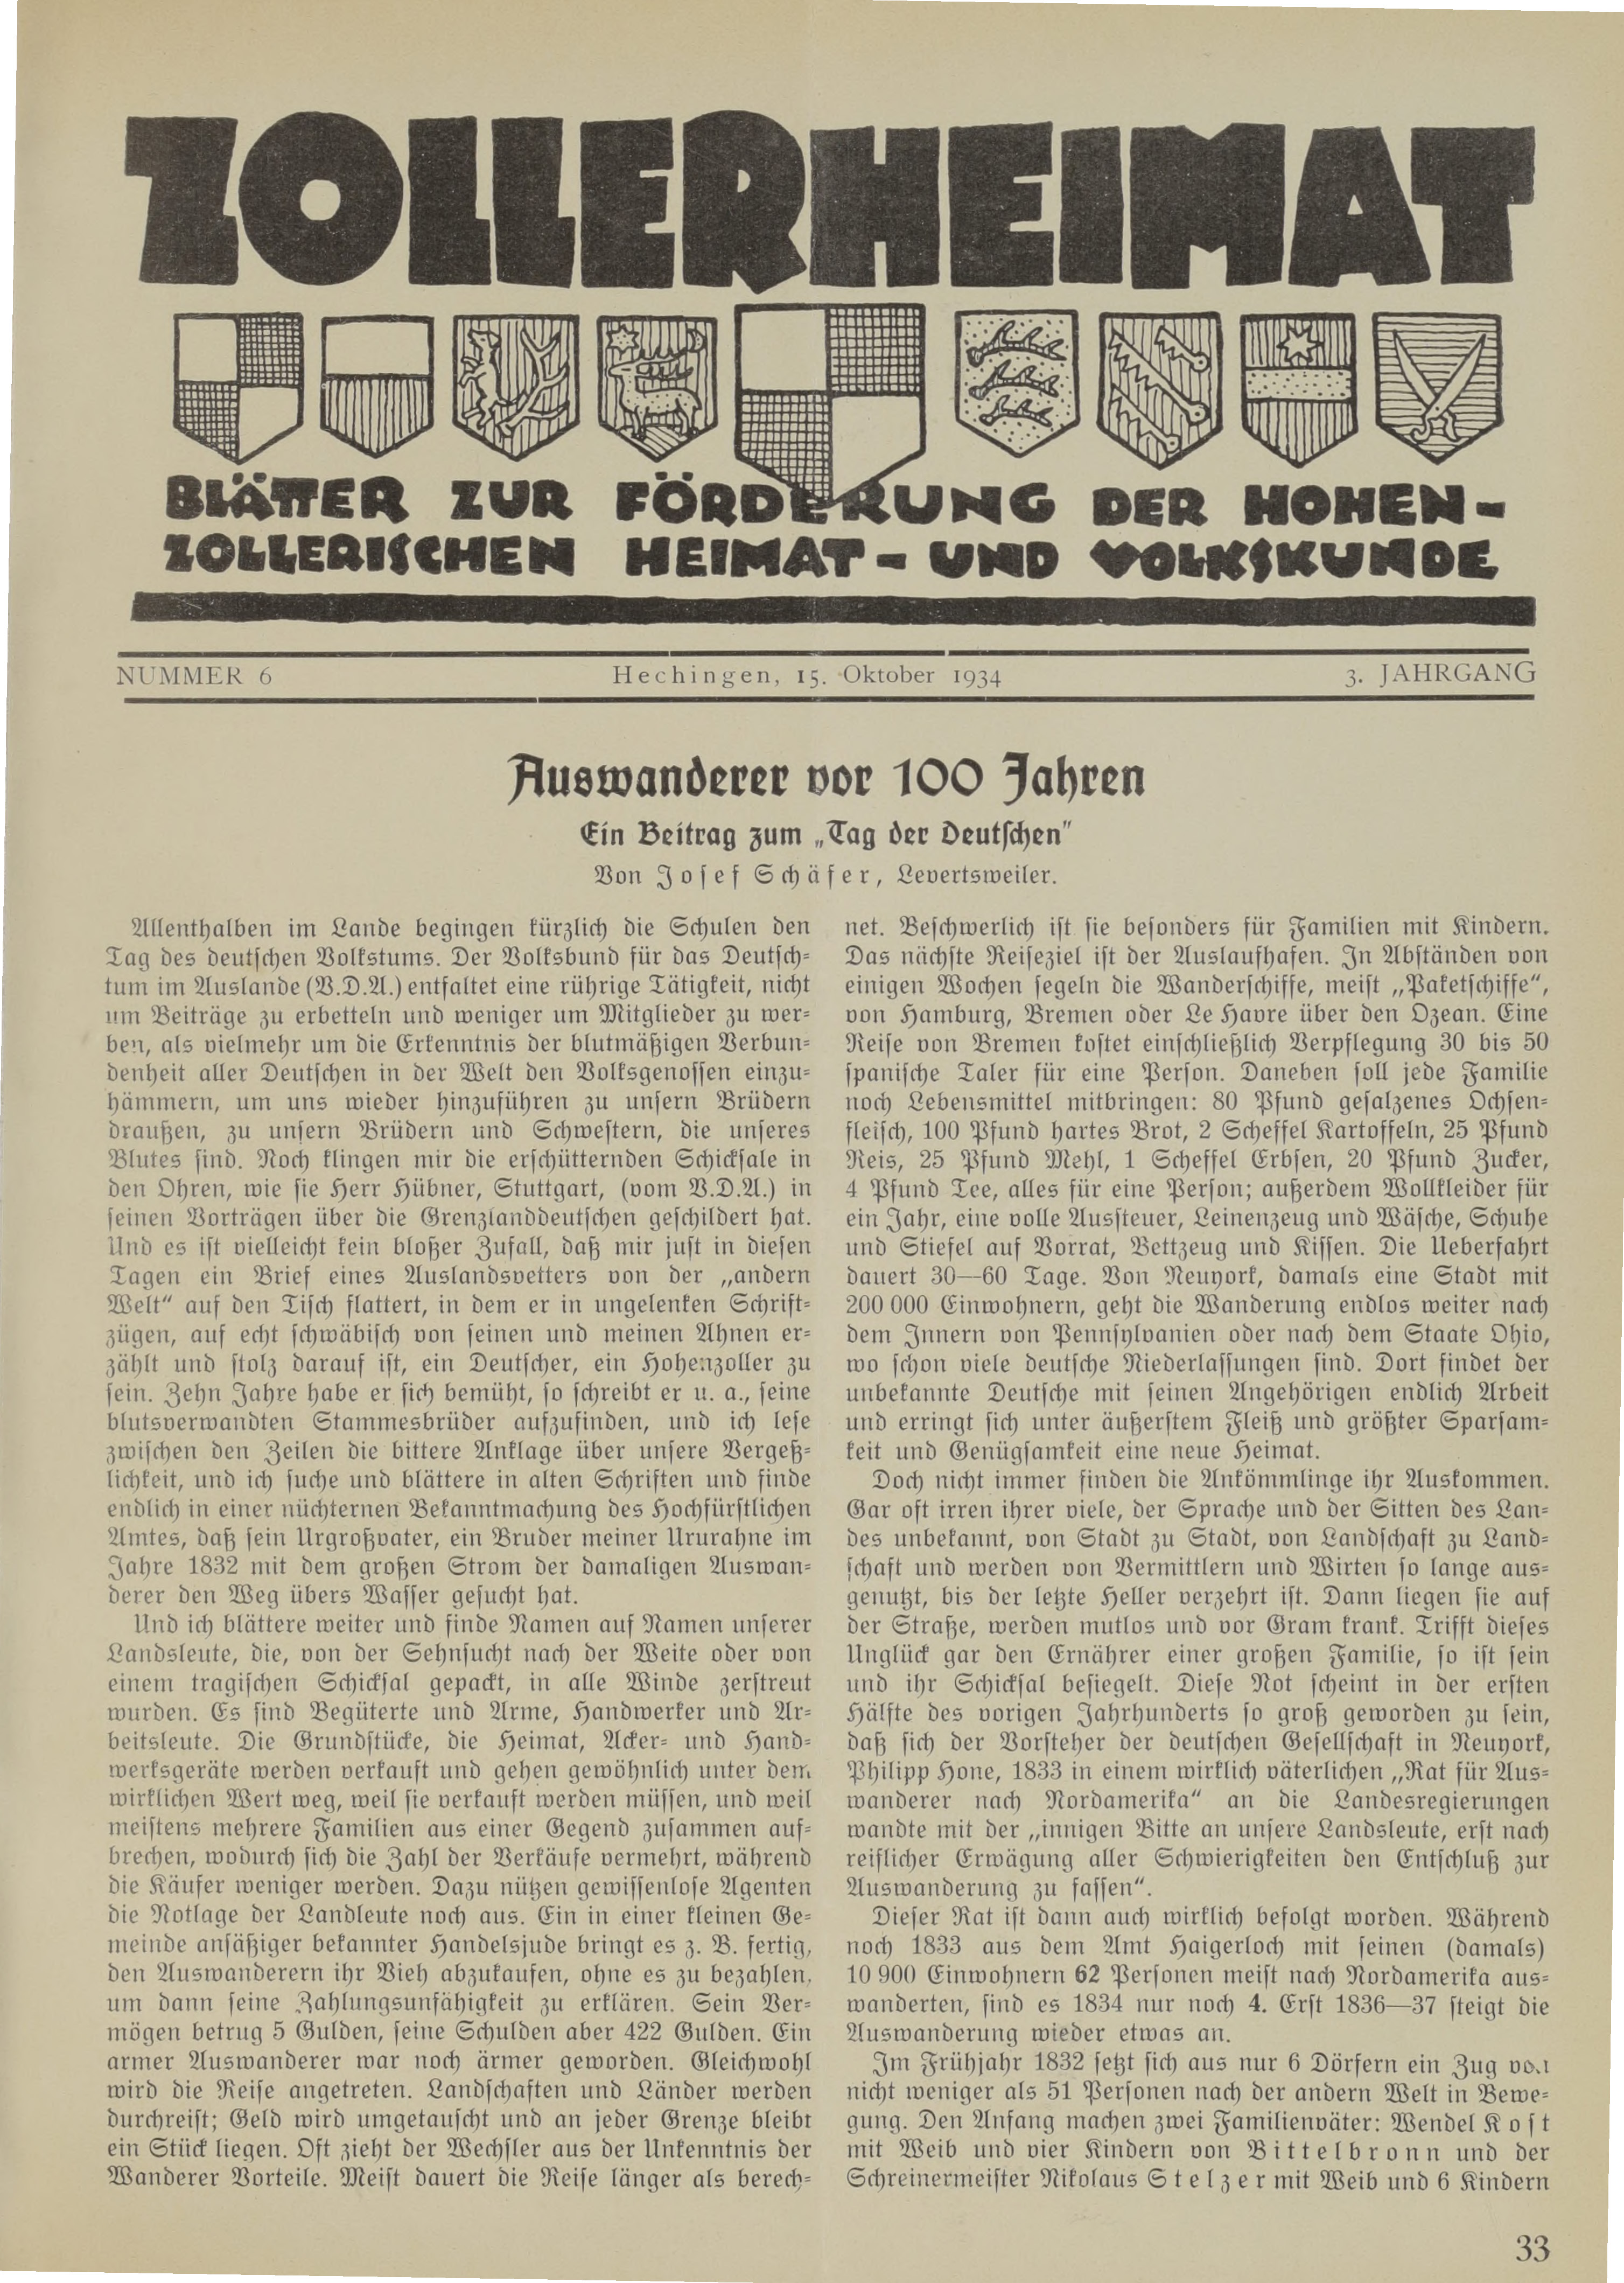                     Ansehen Bd. 3 Nr. 6 (1934): Zollerheimat
                